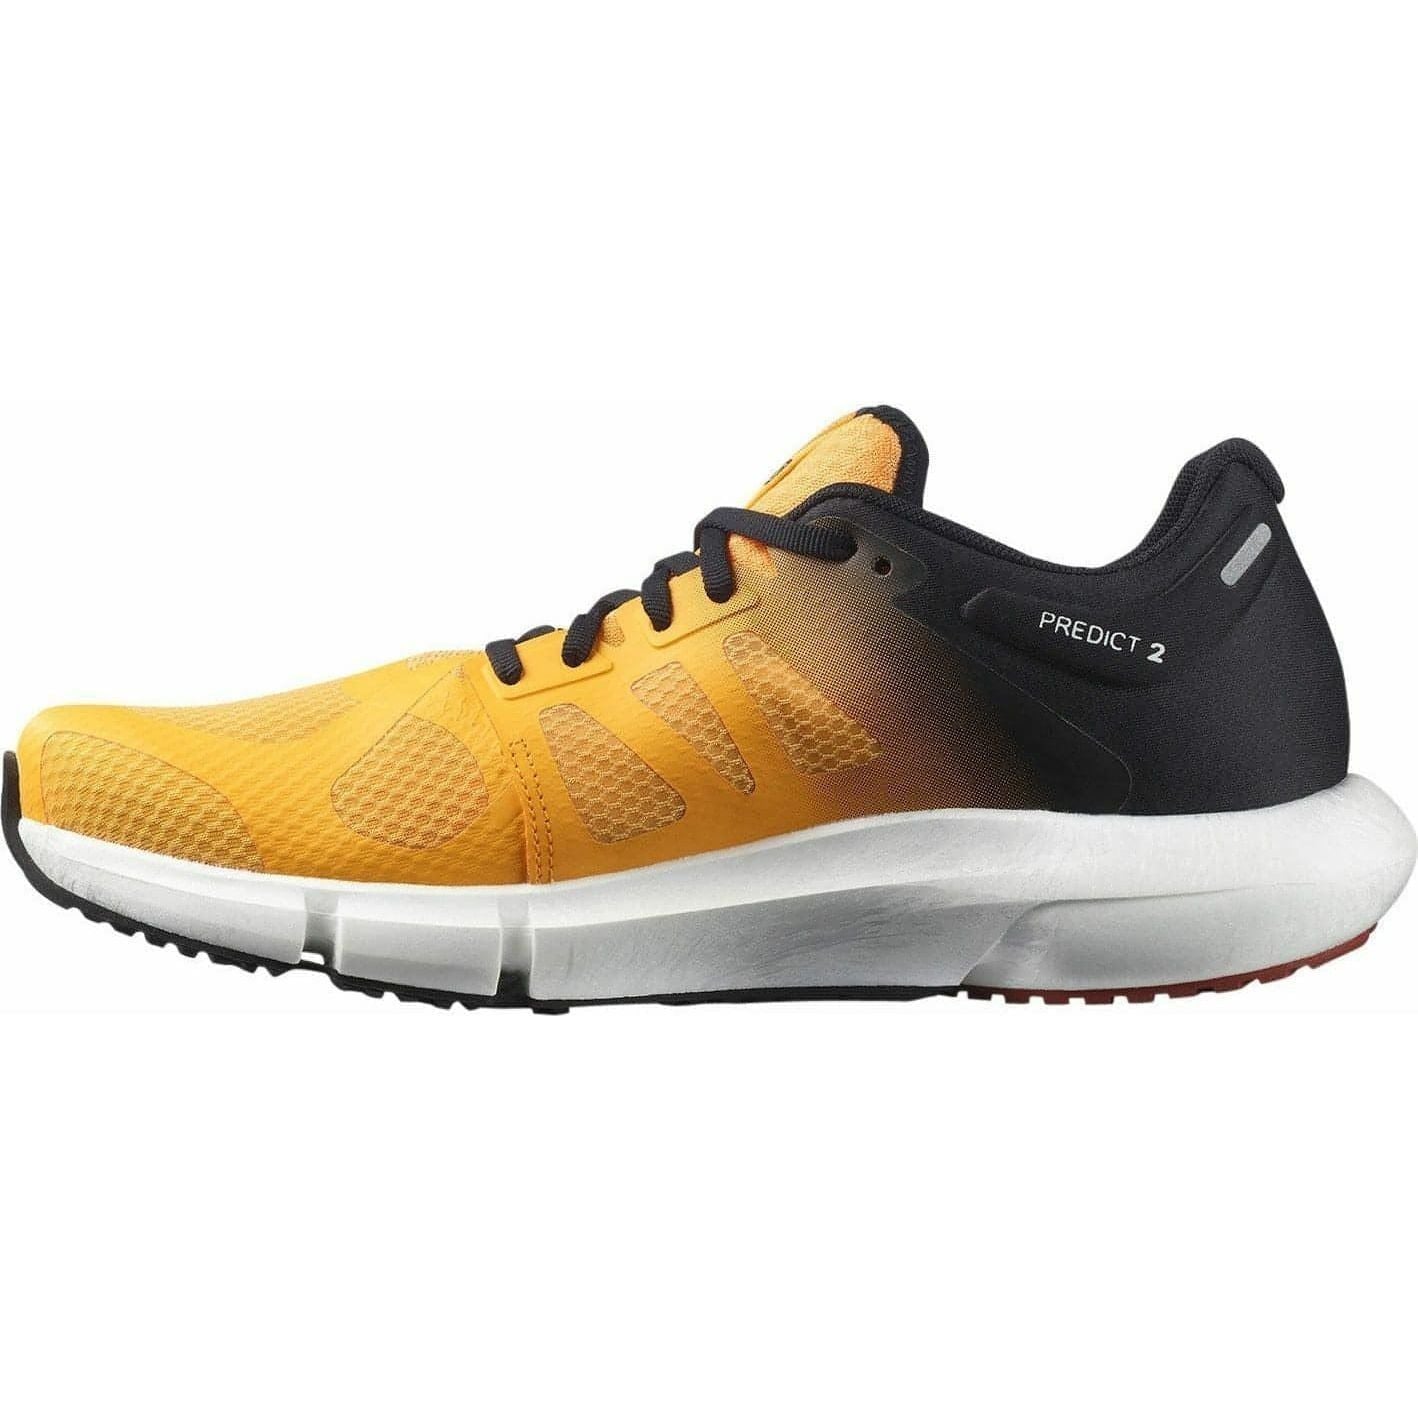 Salomon Predict 2 Mens Running Shoes - Orange - Start Fitness